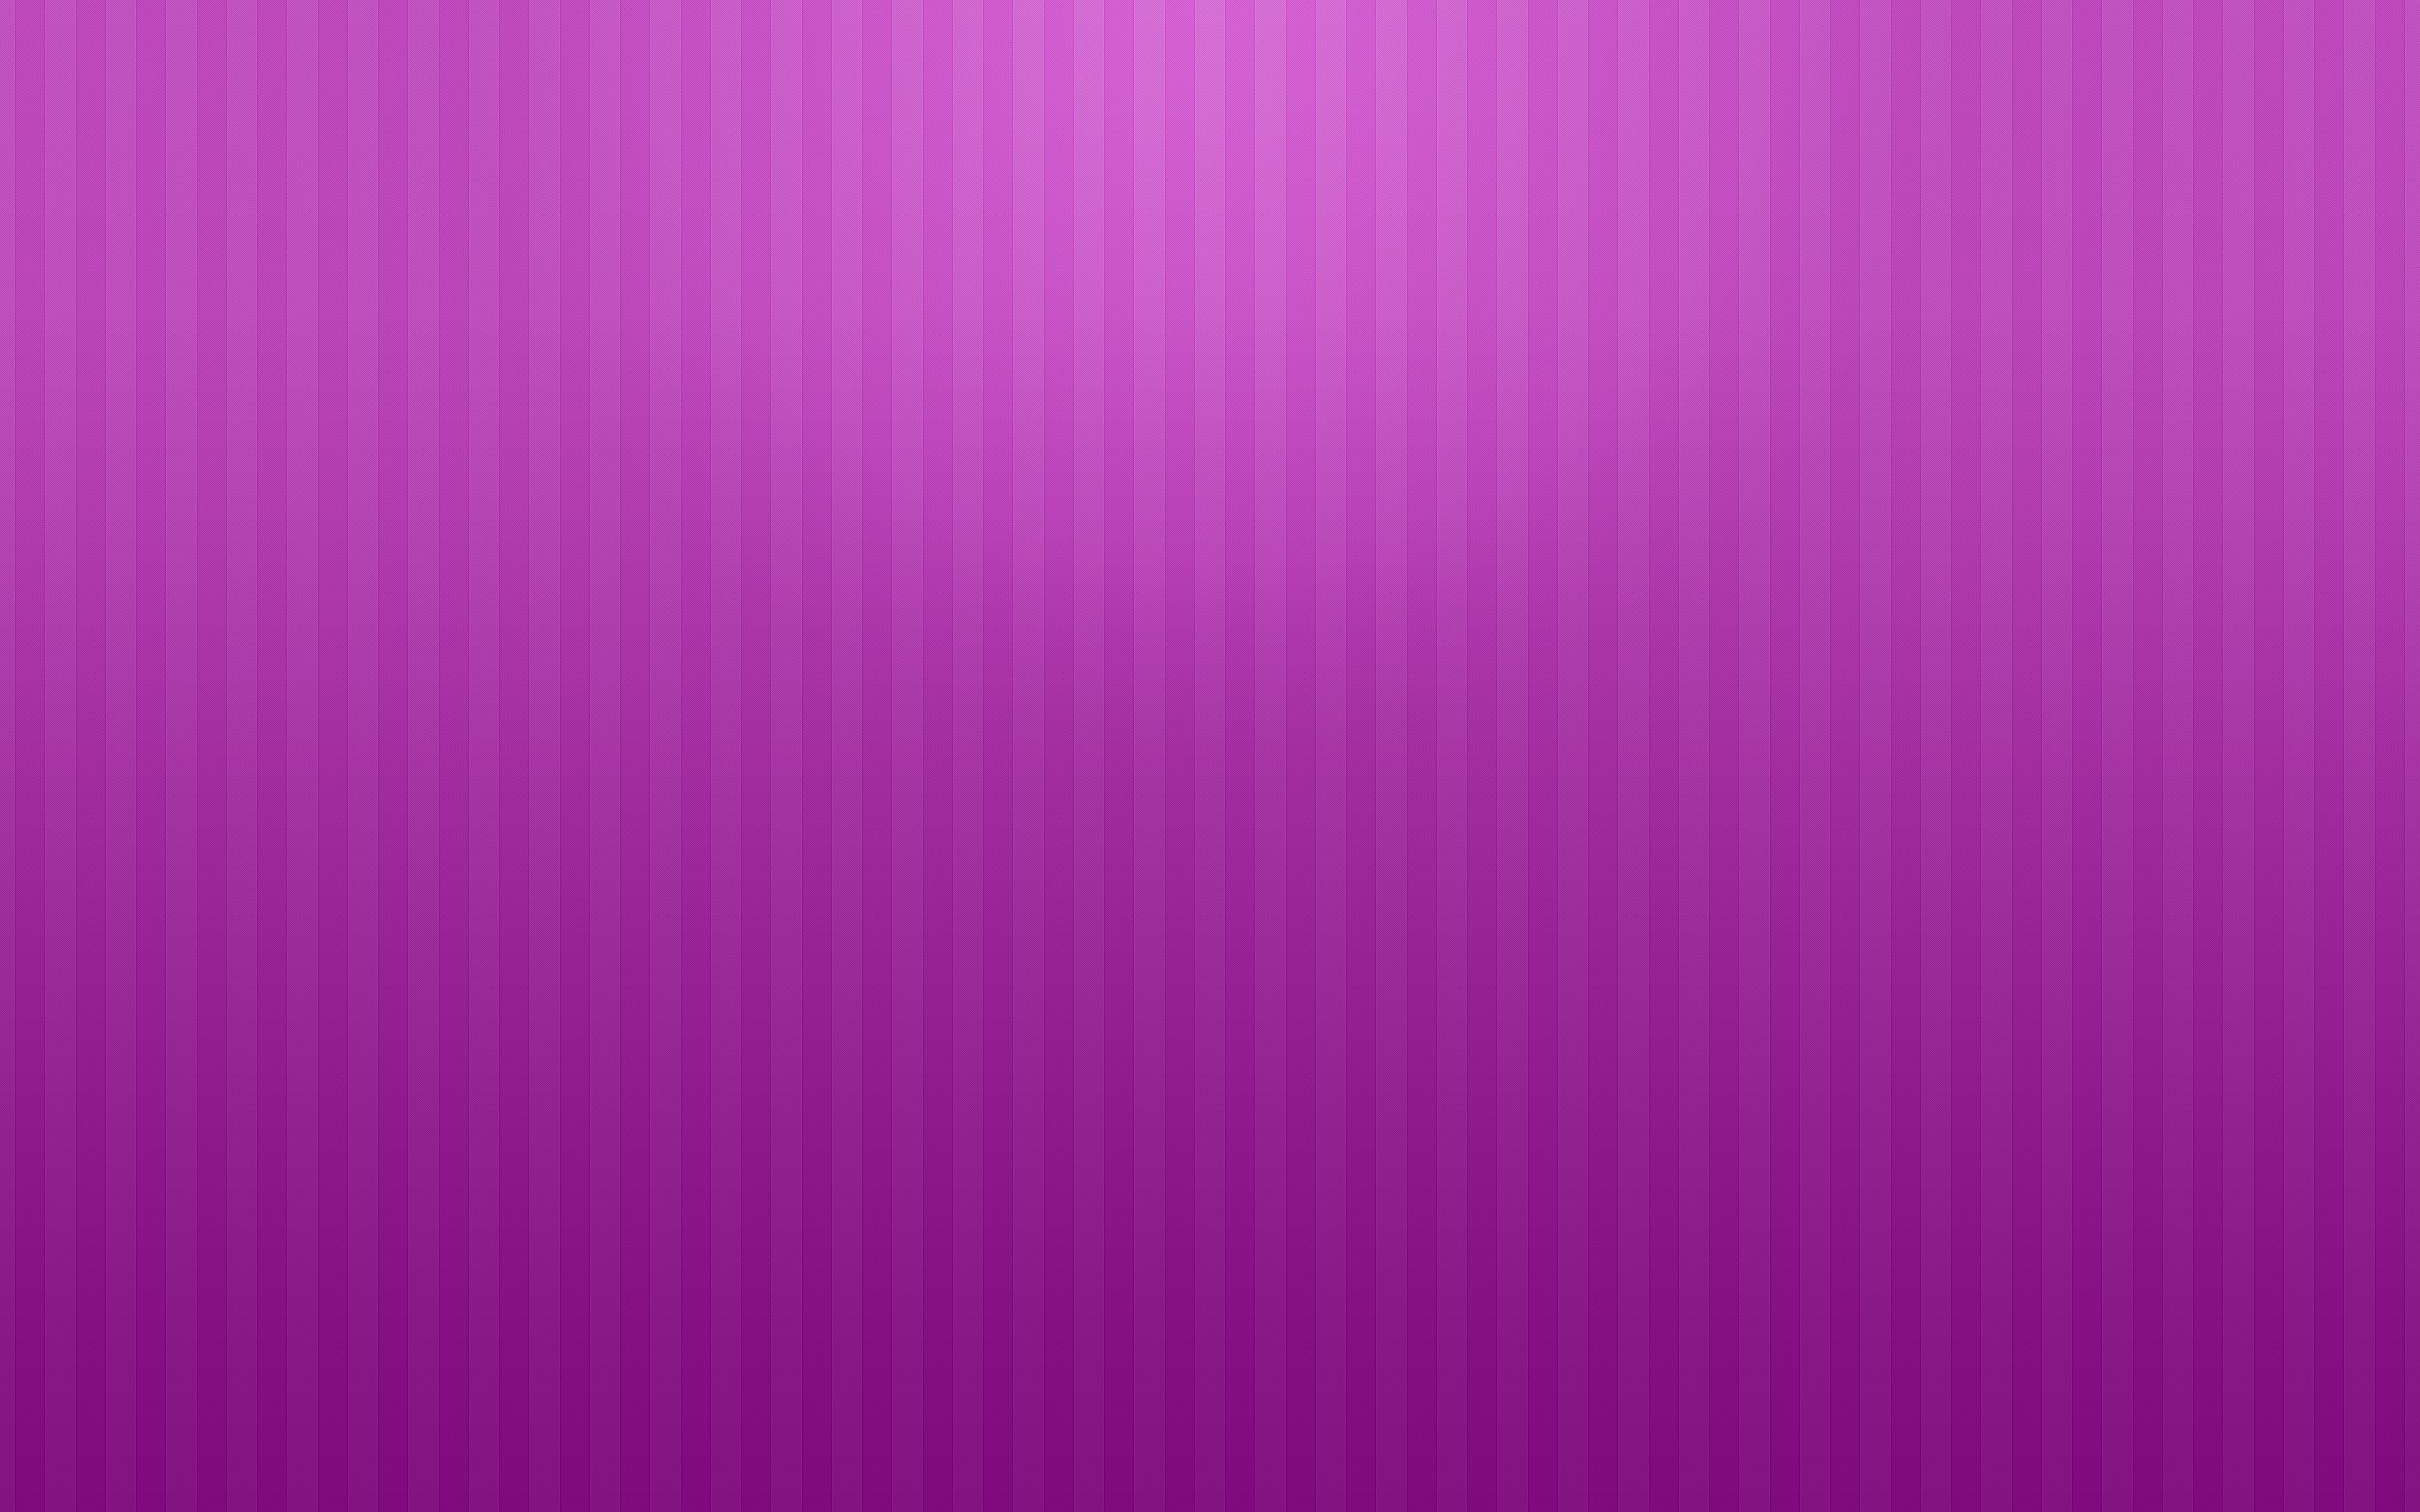 descarga gratuita de fondo de pantalla de color liso,violeta,rosado,púrpura,lila,rojo